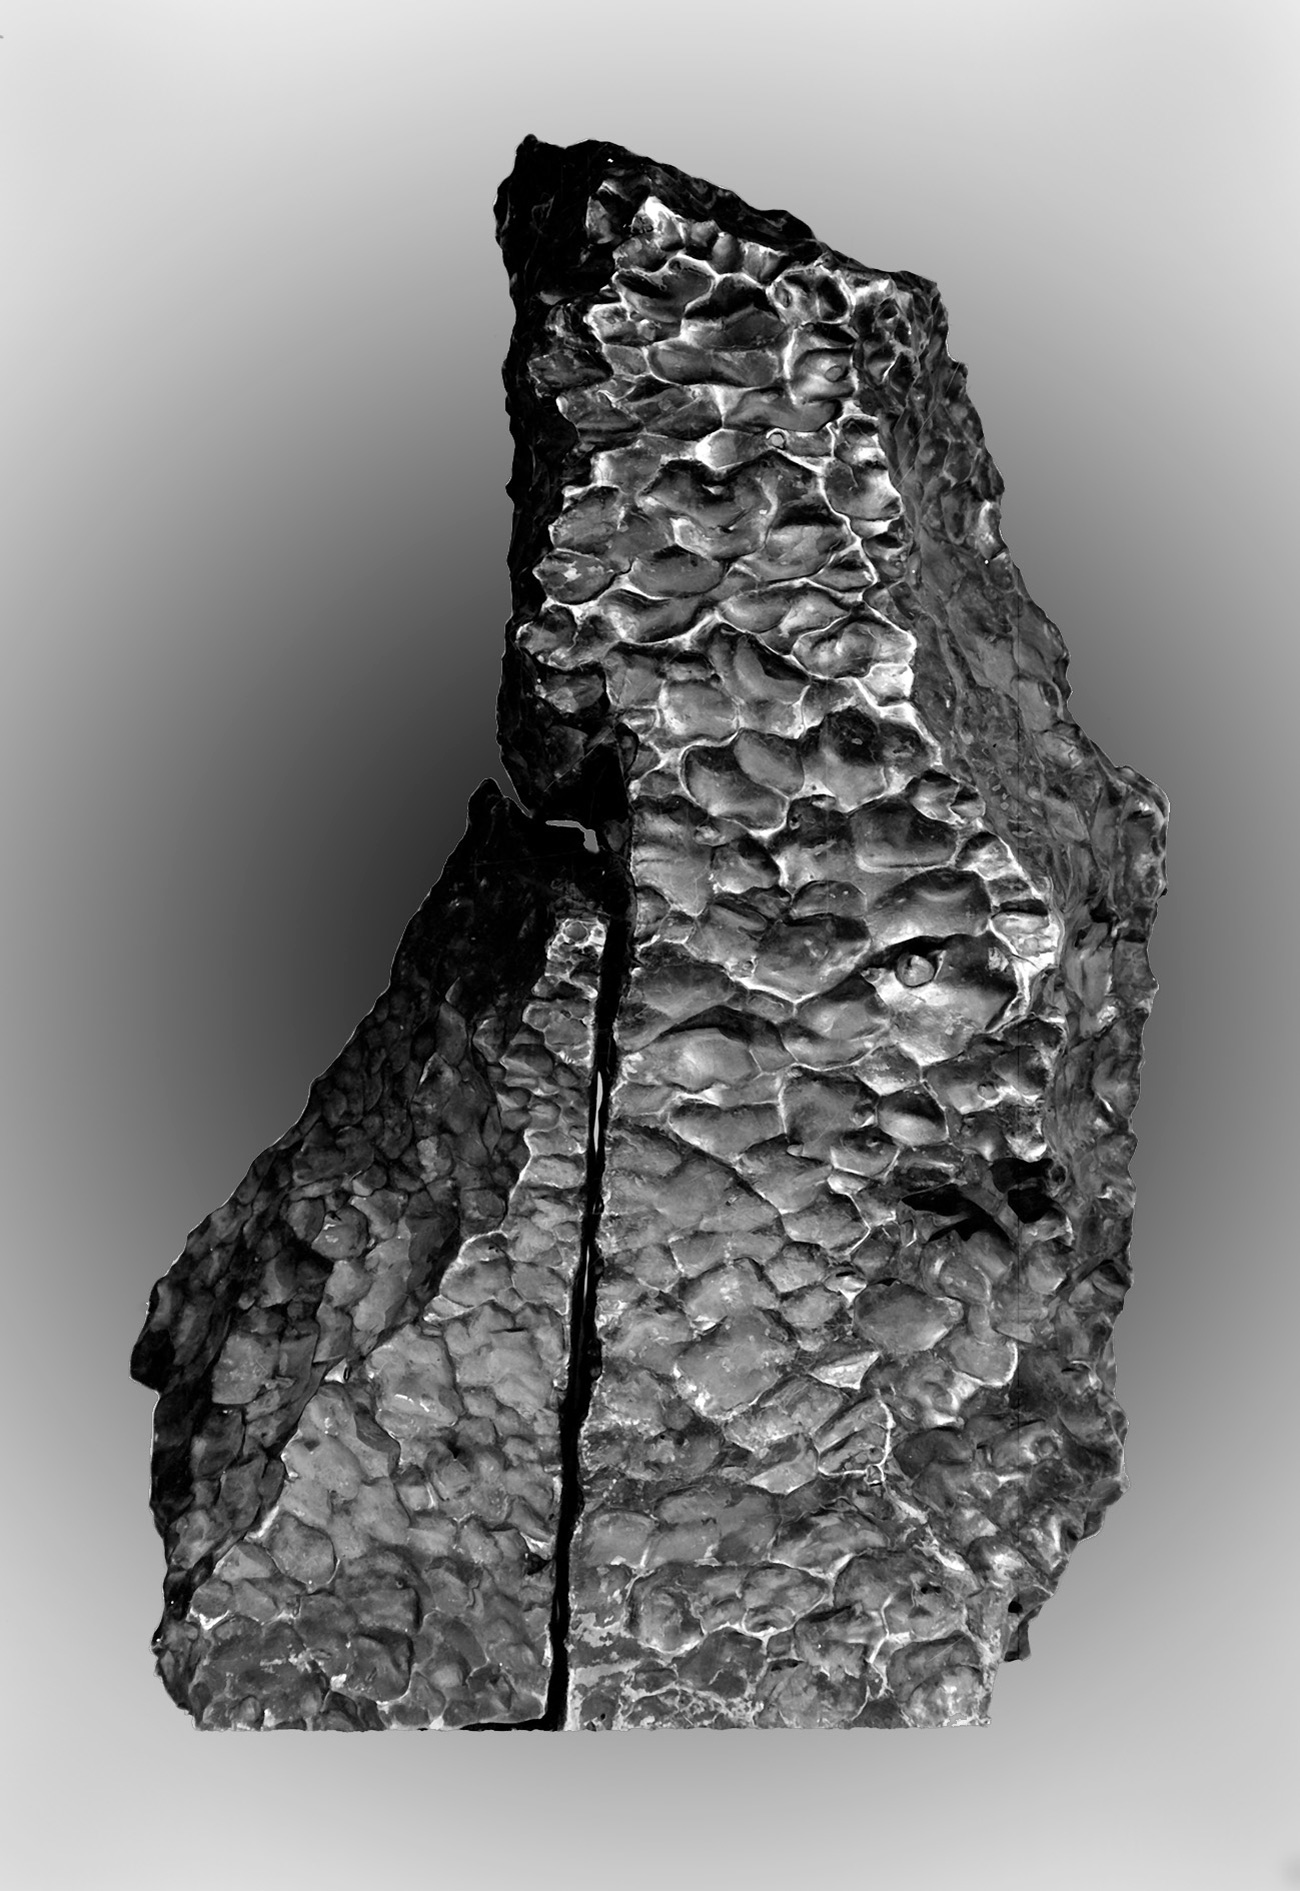 Meteorito de 255 kg é um dos maiores cuja queda foi observada por humanos Foto: Gueórgui Kopitov/wikipedia.org